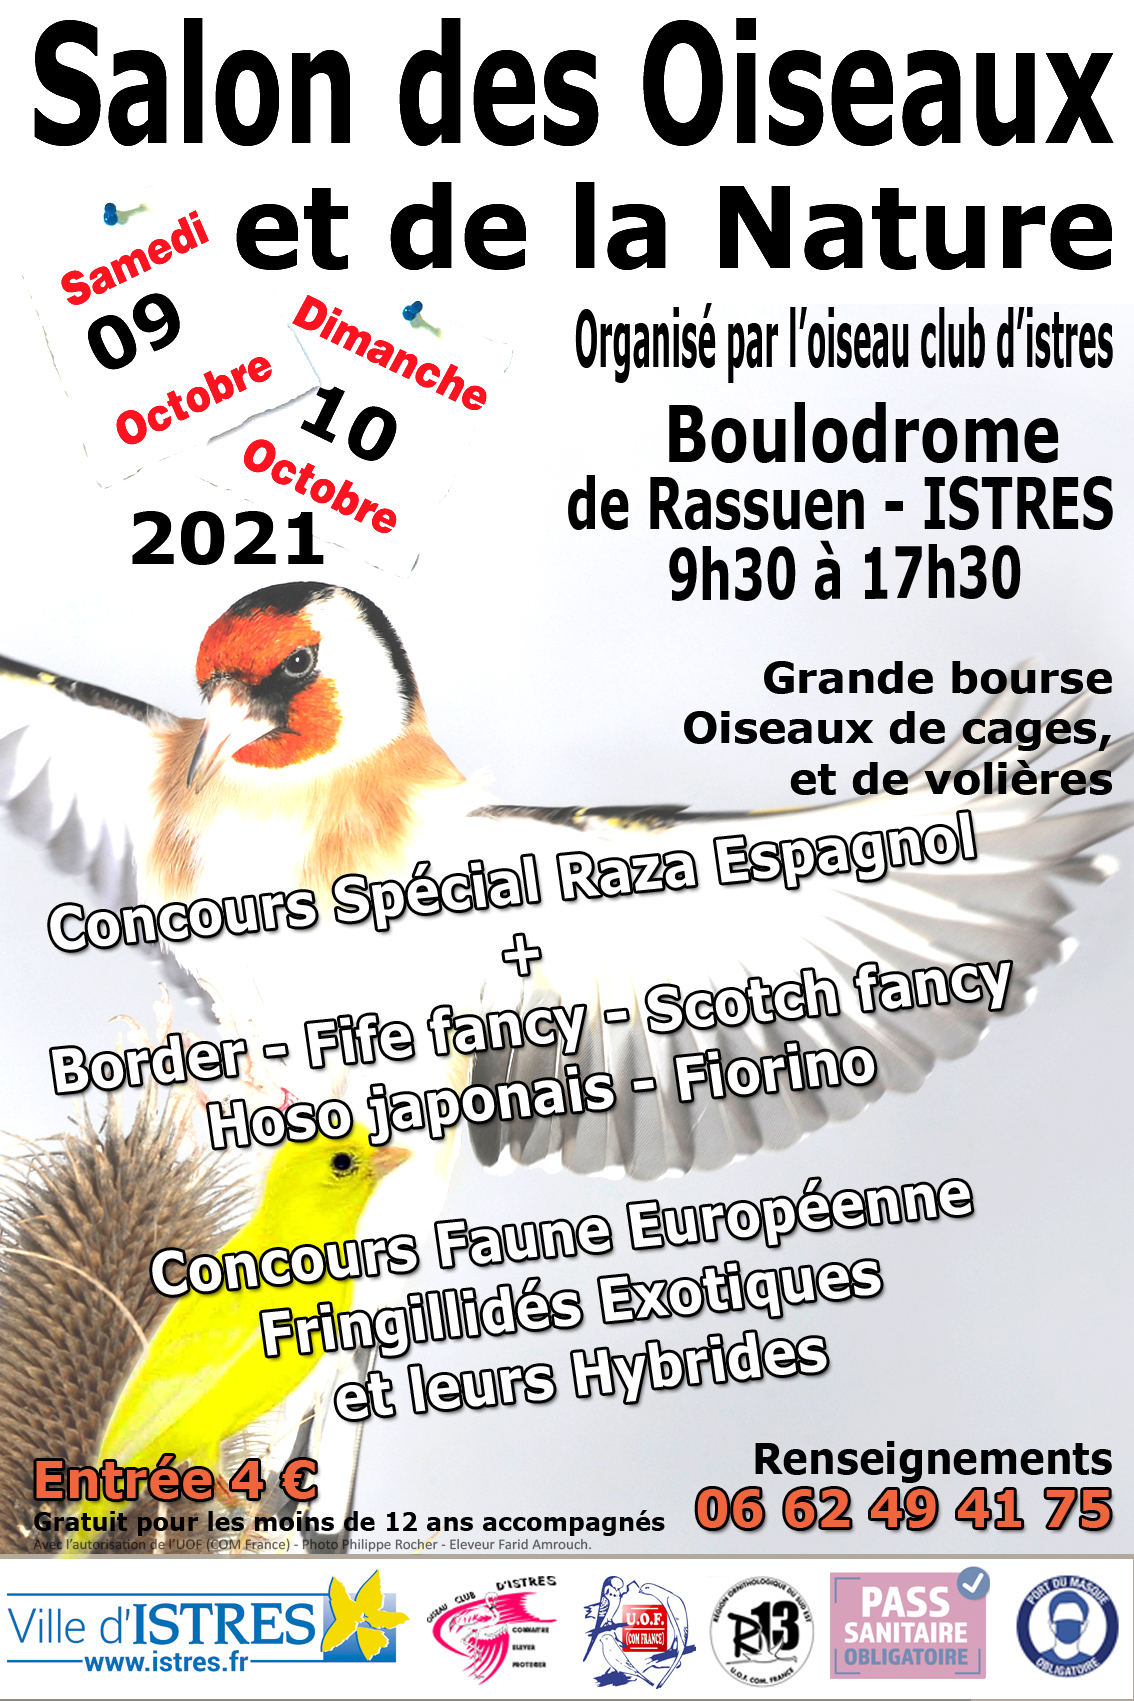 Articles Les Oiseaux du Monde JANVIER 2022 – 20ème Salon des Oiseaux et de la Nature Istres 9 et 10 octobre 2021. Michel Brau